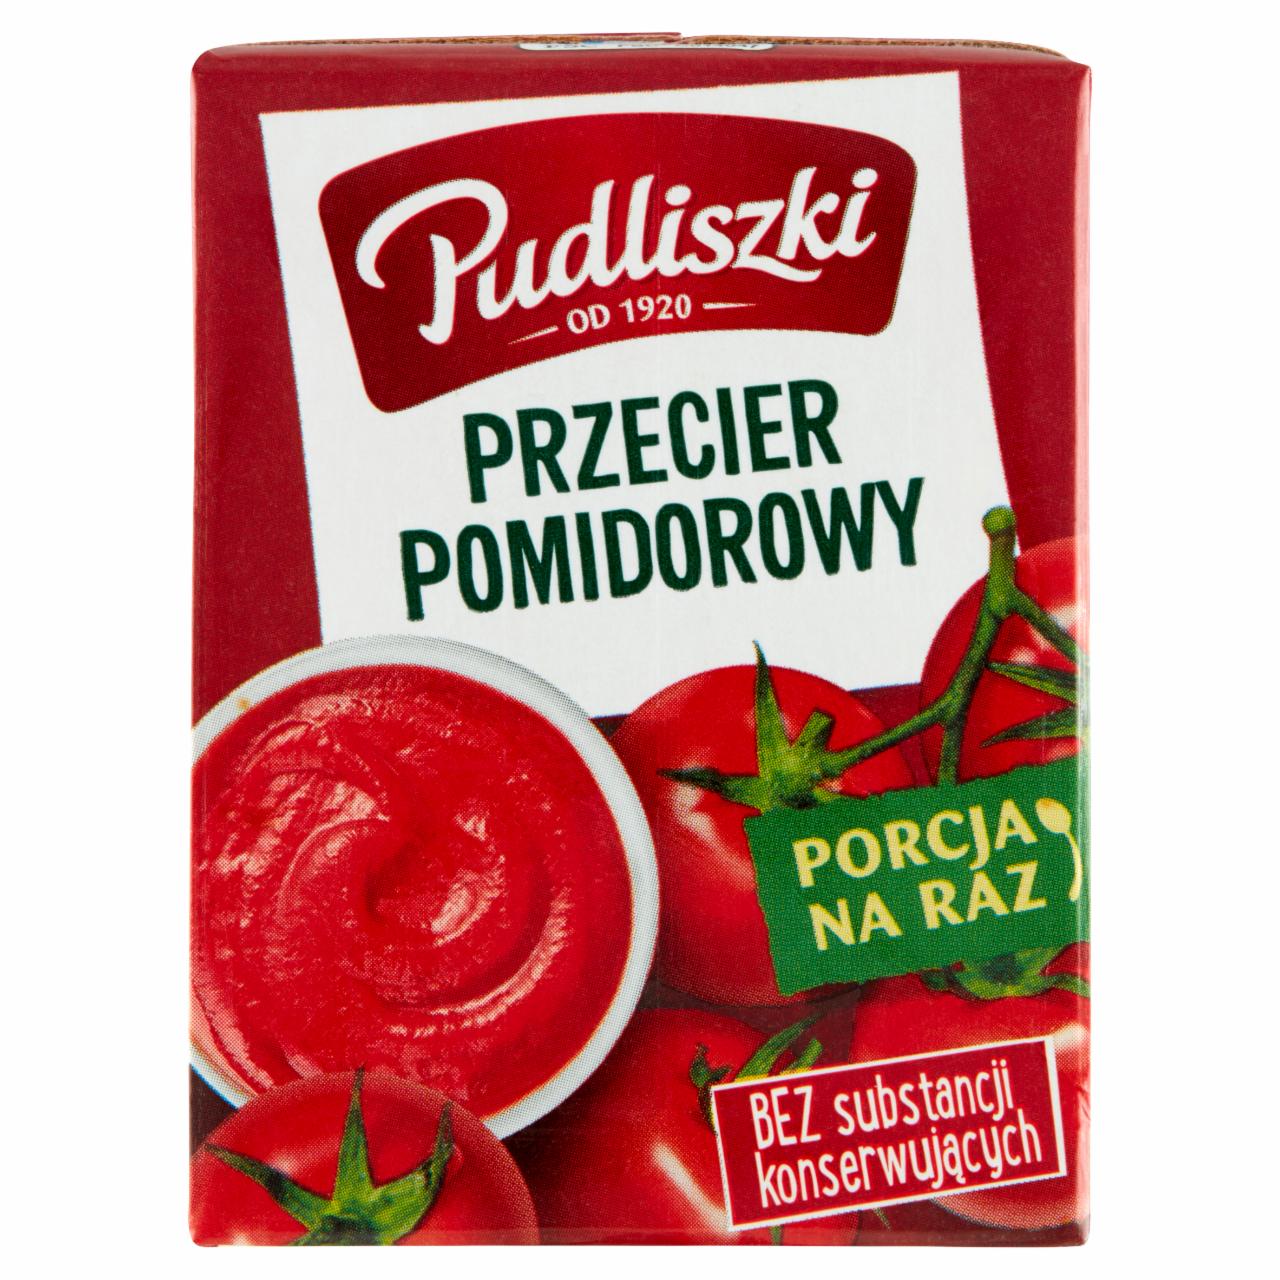 Zdjęcia - Przecier pomidorowy 210 g Pudliszki